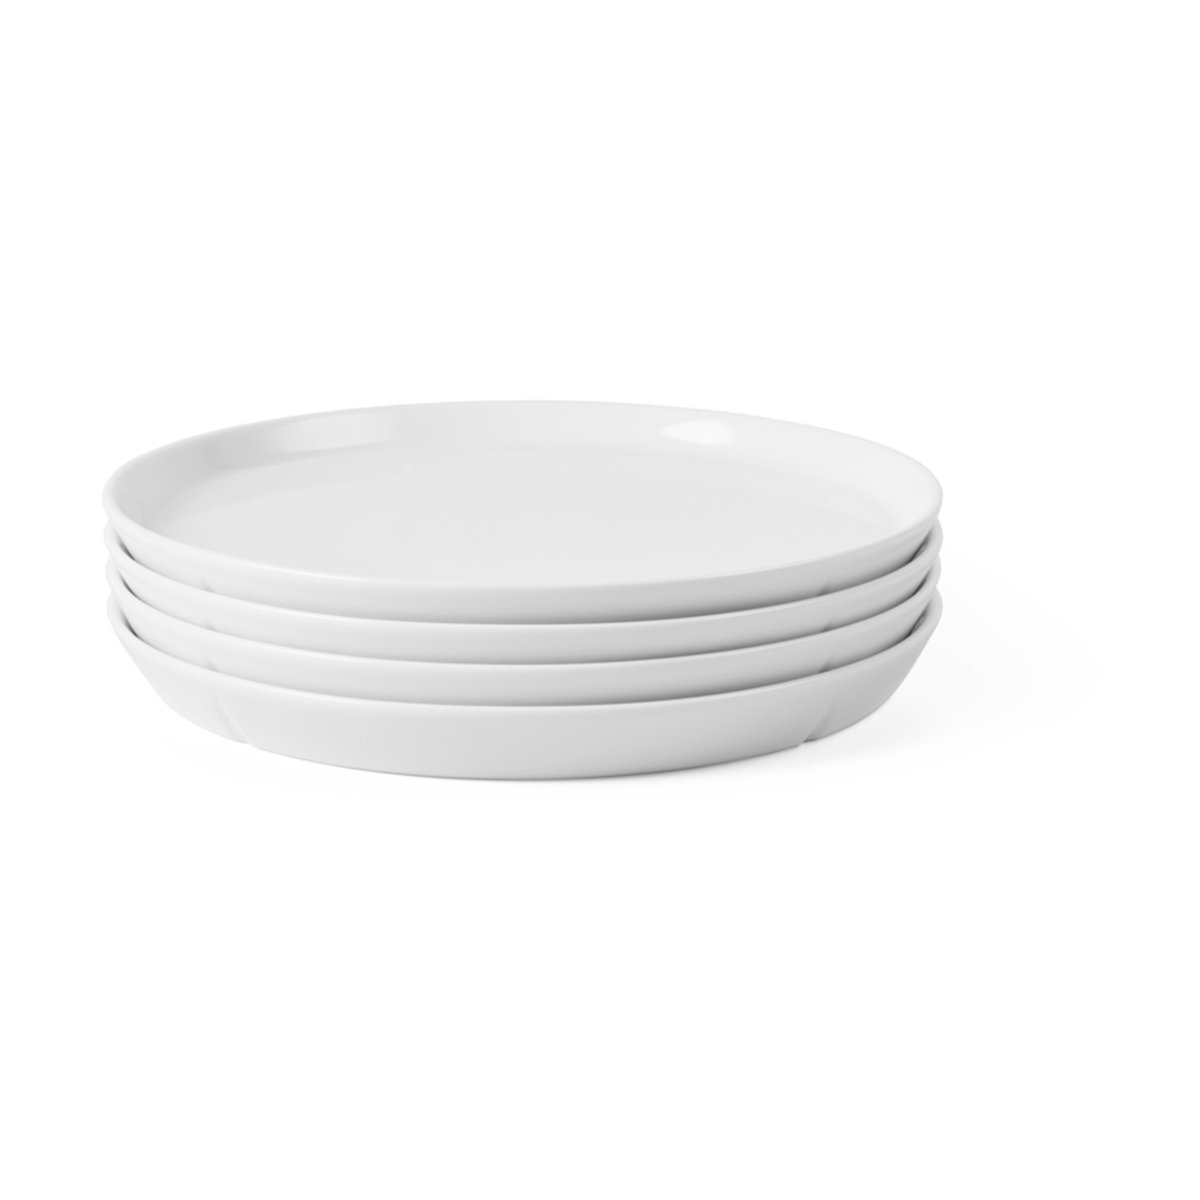 Rosendahl Grand Cru essentials frokosttallerken Ø20,5 cm 4-pak Hvid